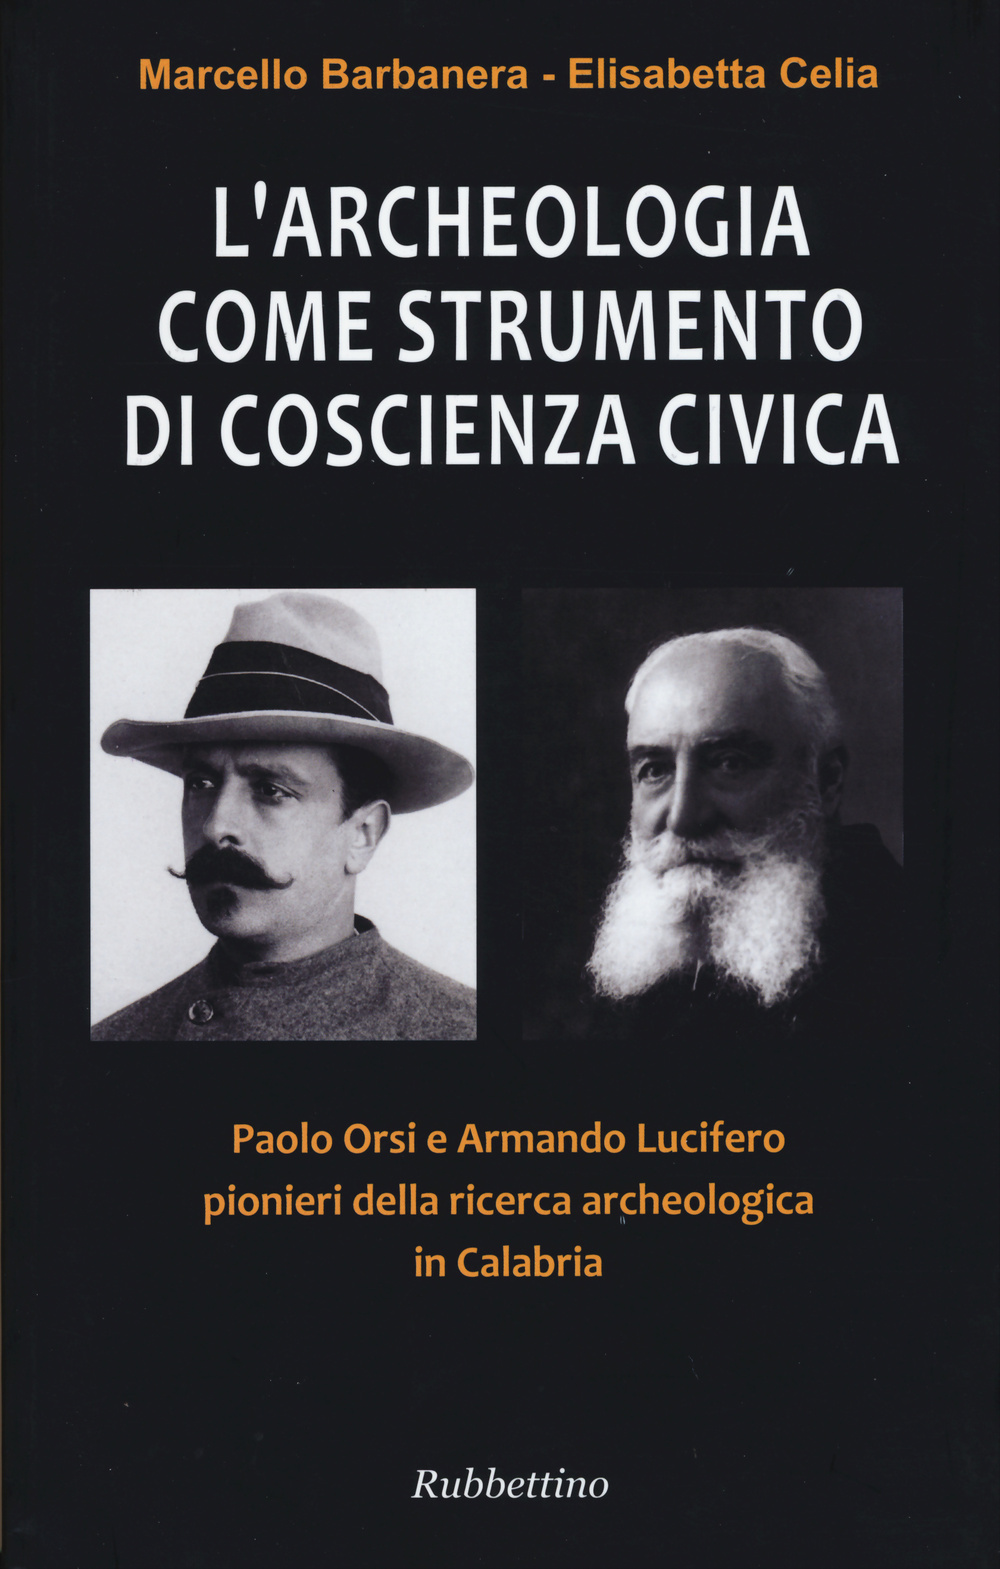 L'archeologia come strumento di coscienza civica. Paolo Orsi e Armando Lucifero pionieri della ricerca archeologica in Calabria